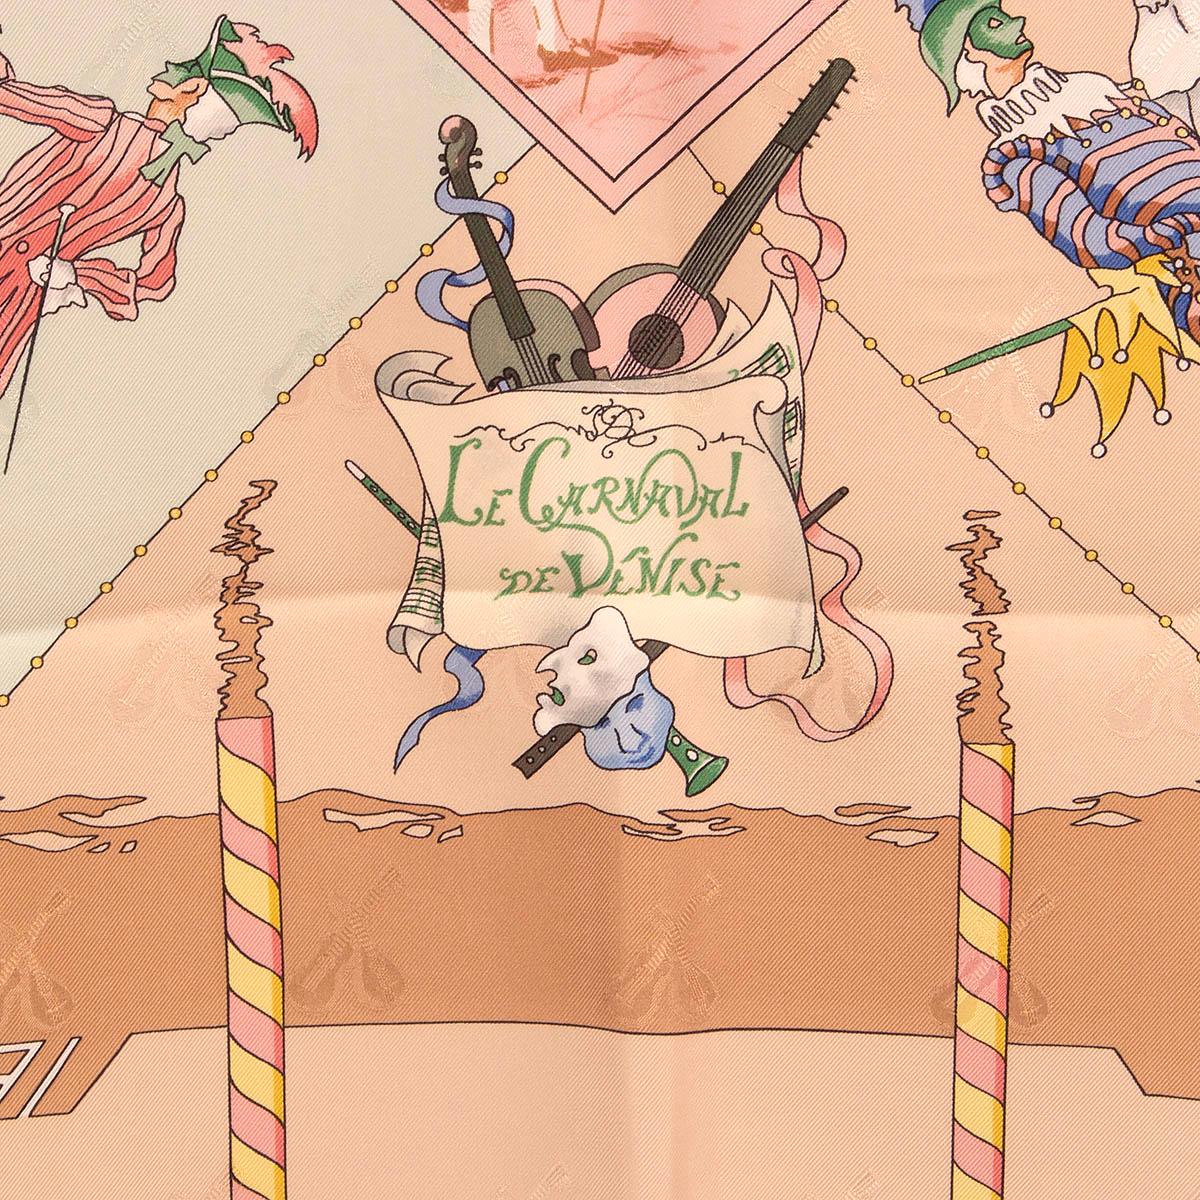 100 % authentique Hermès 'Le Carnaval de Venise 90' foulard par Hubert de Watrigant en jacquard de soie beige et rose (100 %) avec détails menthe, vert, jaune et marron. A été porté et est en excellent état.

Mesures
Largeur	90cm